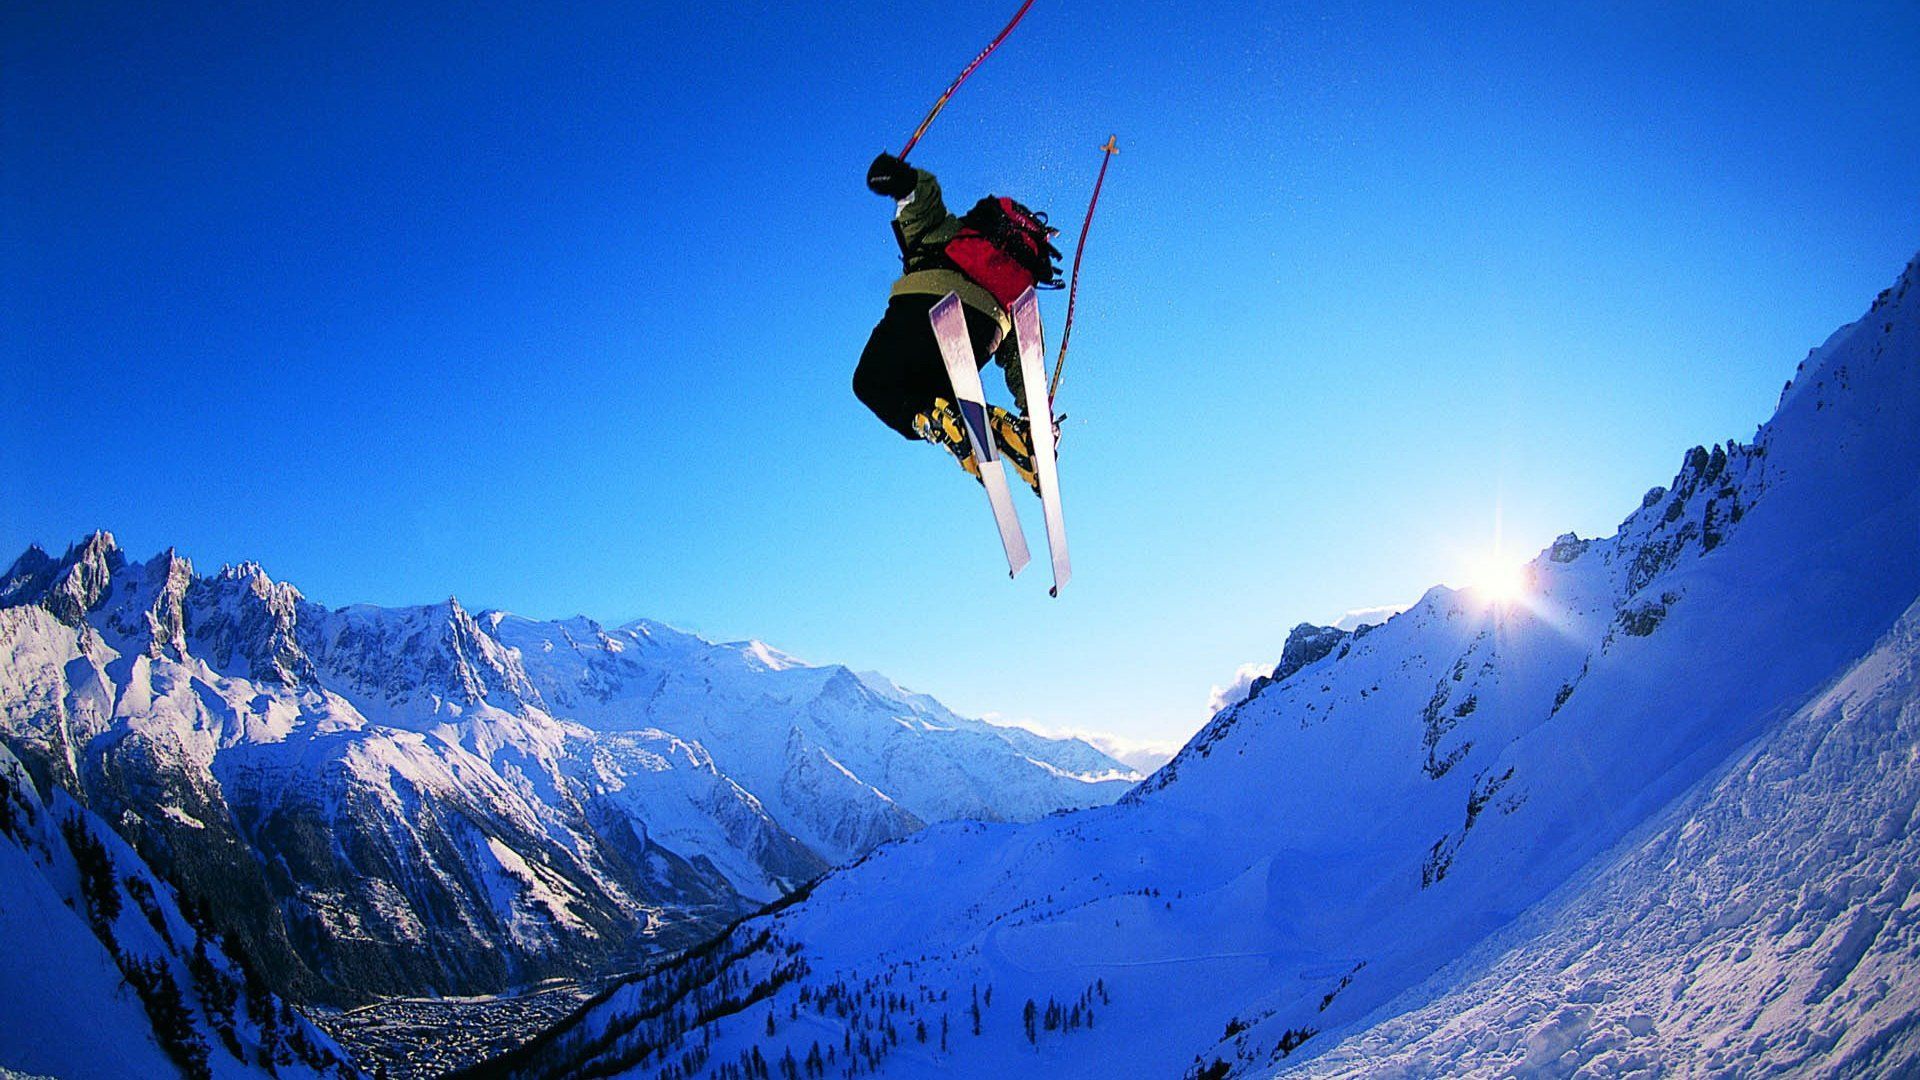 Hd Snowboarding Mountain Wallpaper High Resolution Sports. Hintergrundbilder, Bilder, Hintergrundbilder hd